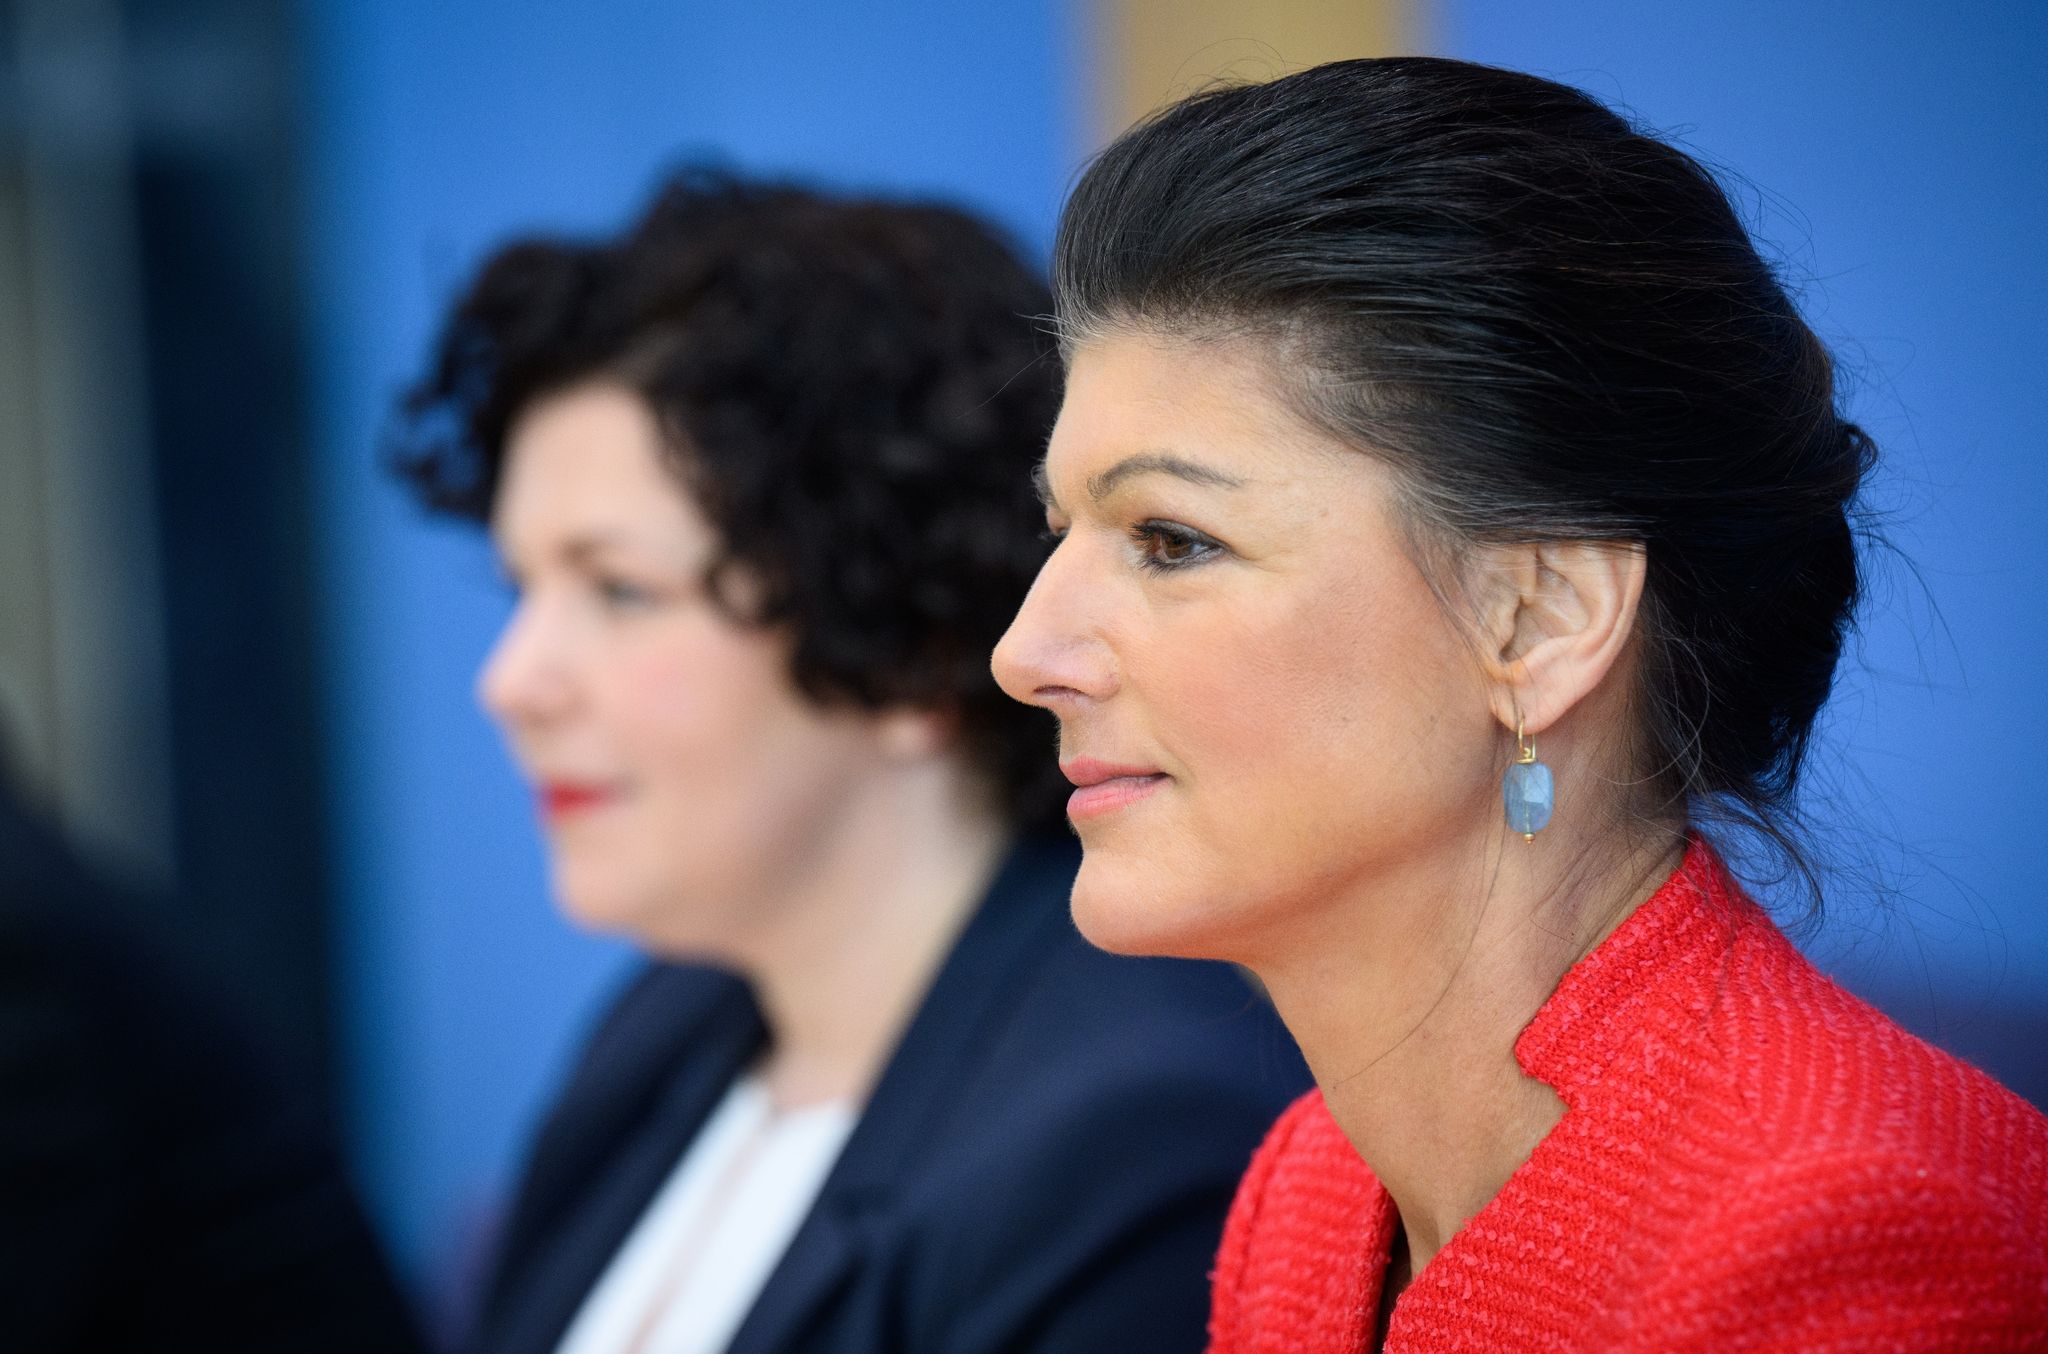 Die Bundestagsabgeordnete Sahra Wagenknecht ist in einer Doppelspitze mit der früheren Chefin der Linksfraktion, Amira Mohamed Ali (l), zur Vorsitzenden des Bündnis Sahra Wagenknecht gewählt worden.